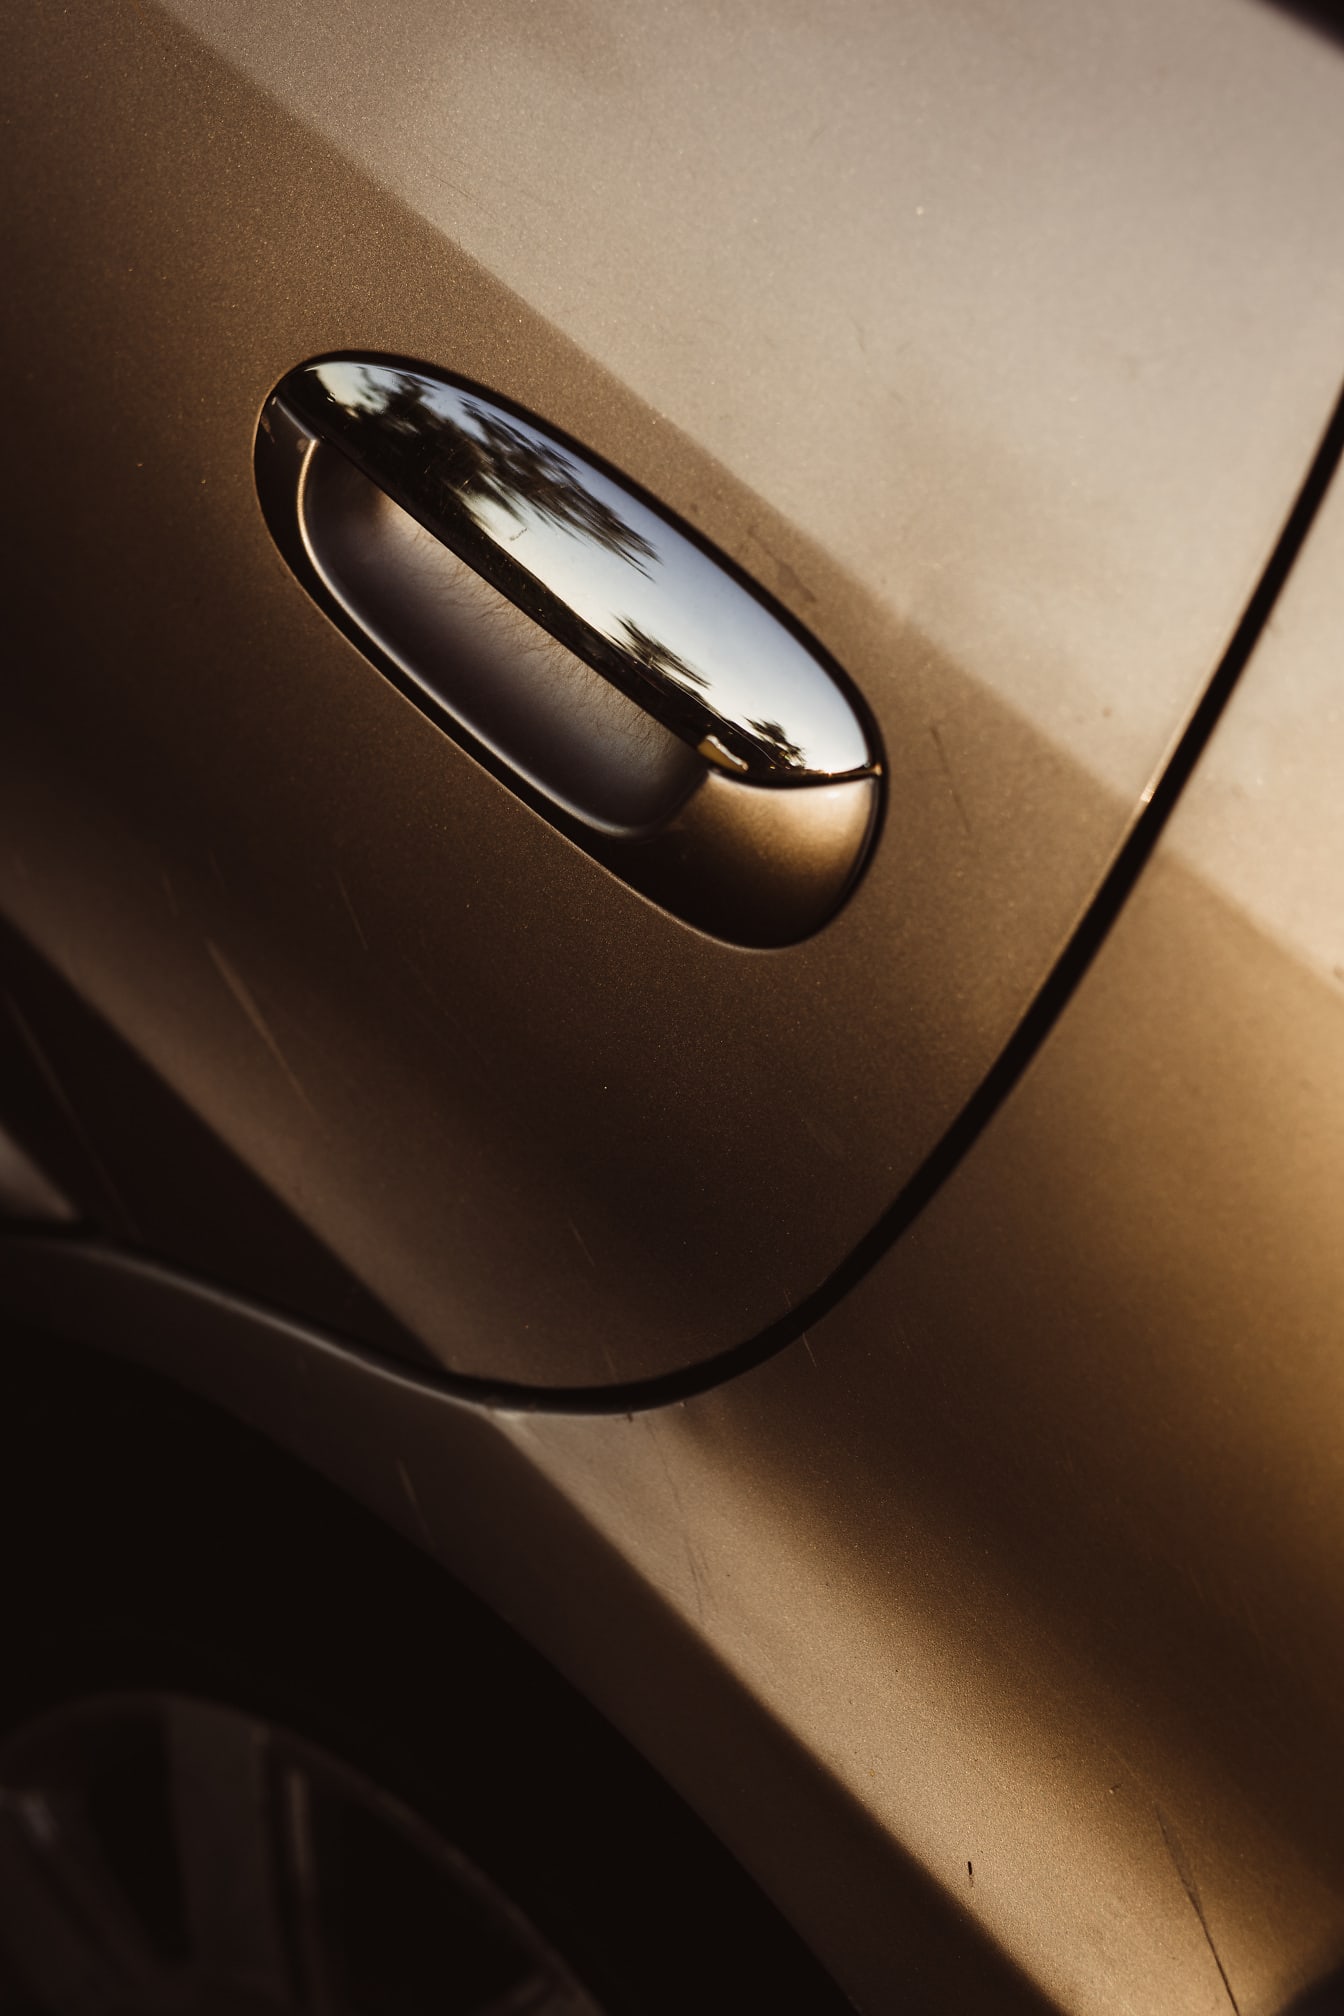 Metalik boja zlatnog sjaja i kvaka na vratima automobila